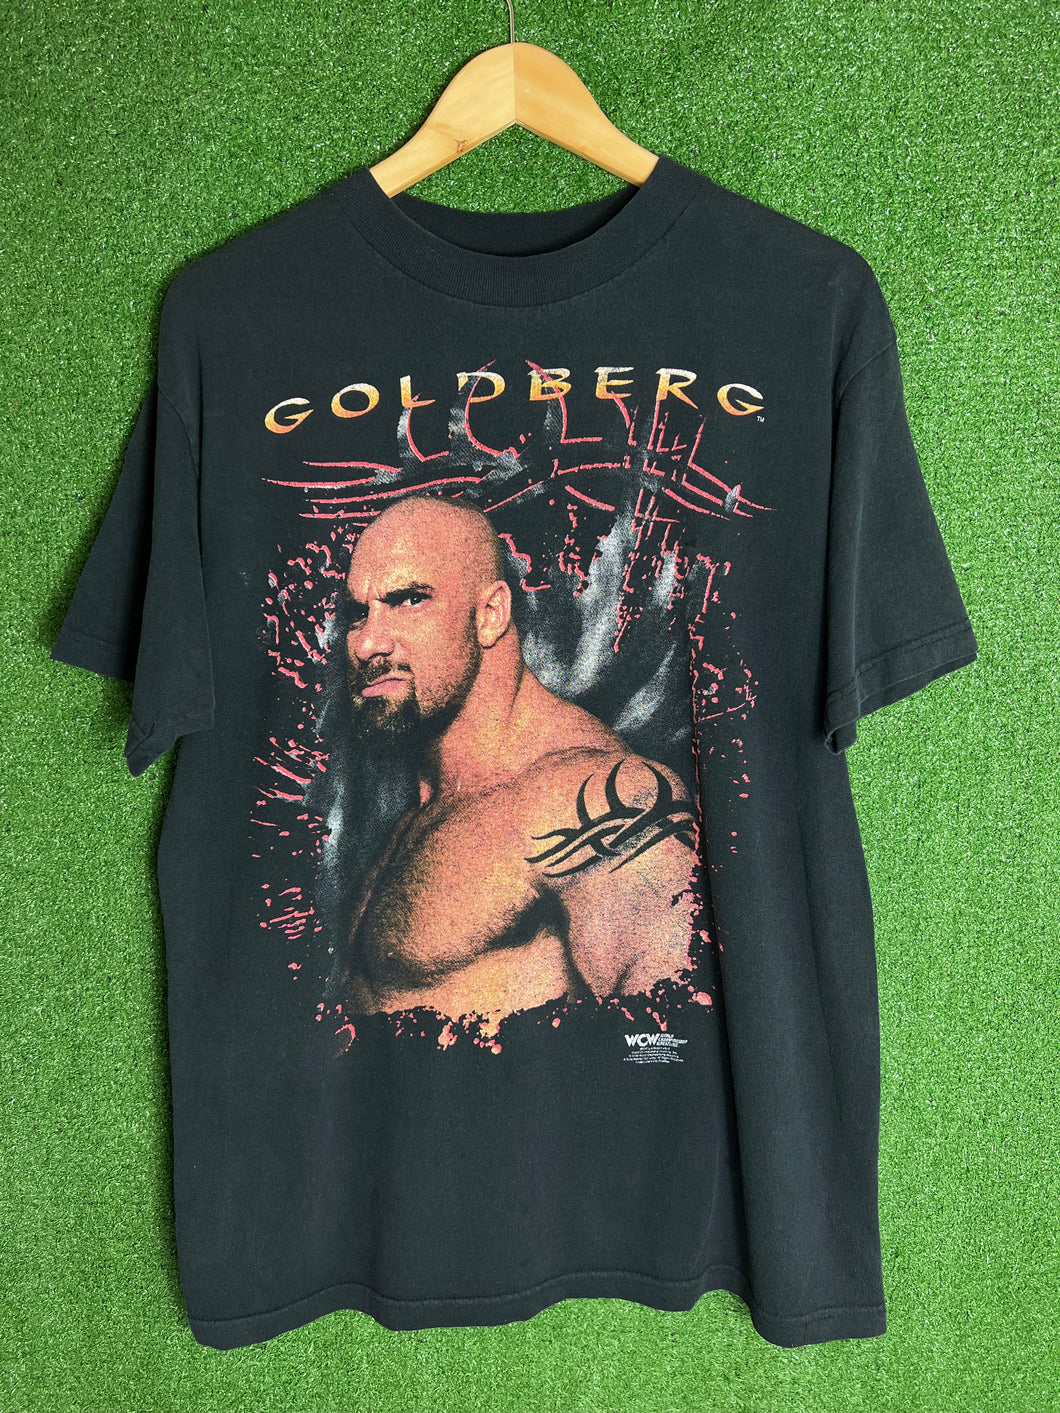 VTG 1996 WCW Goldberg Shirt Size Large